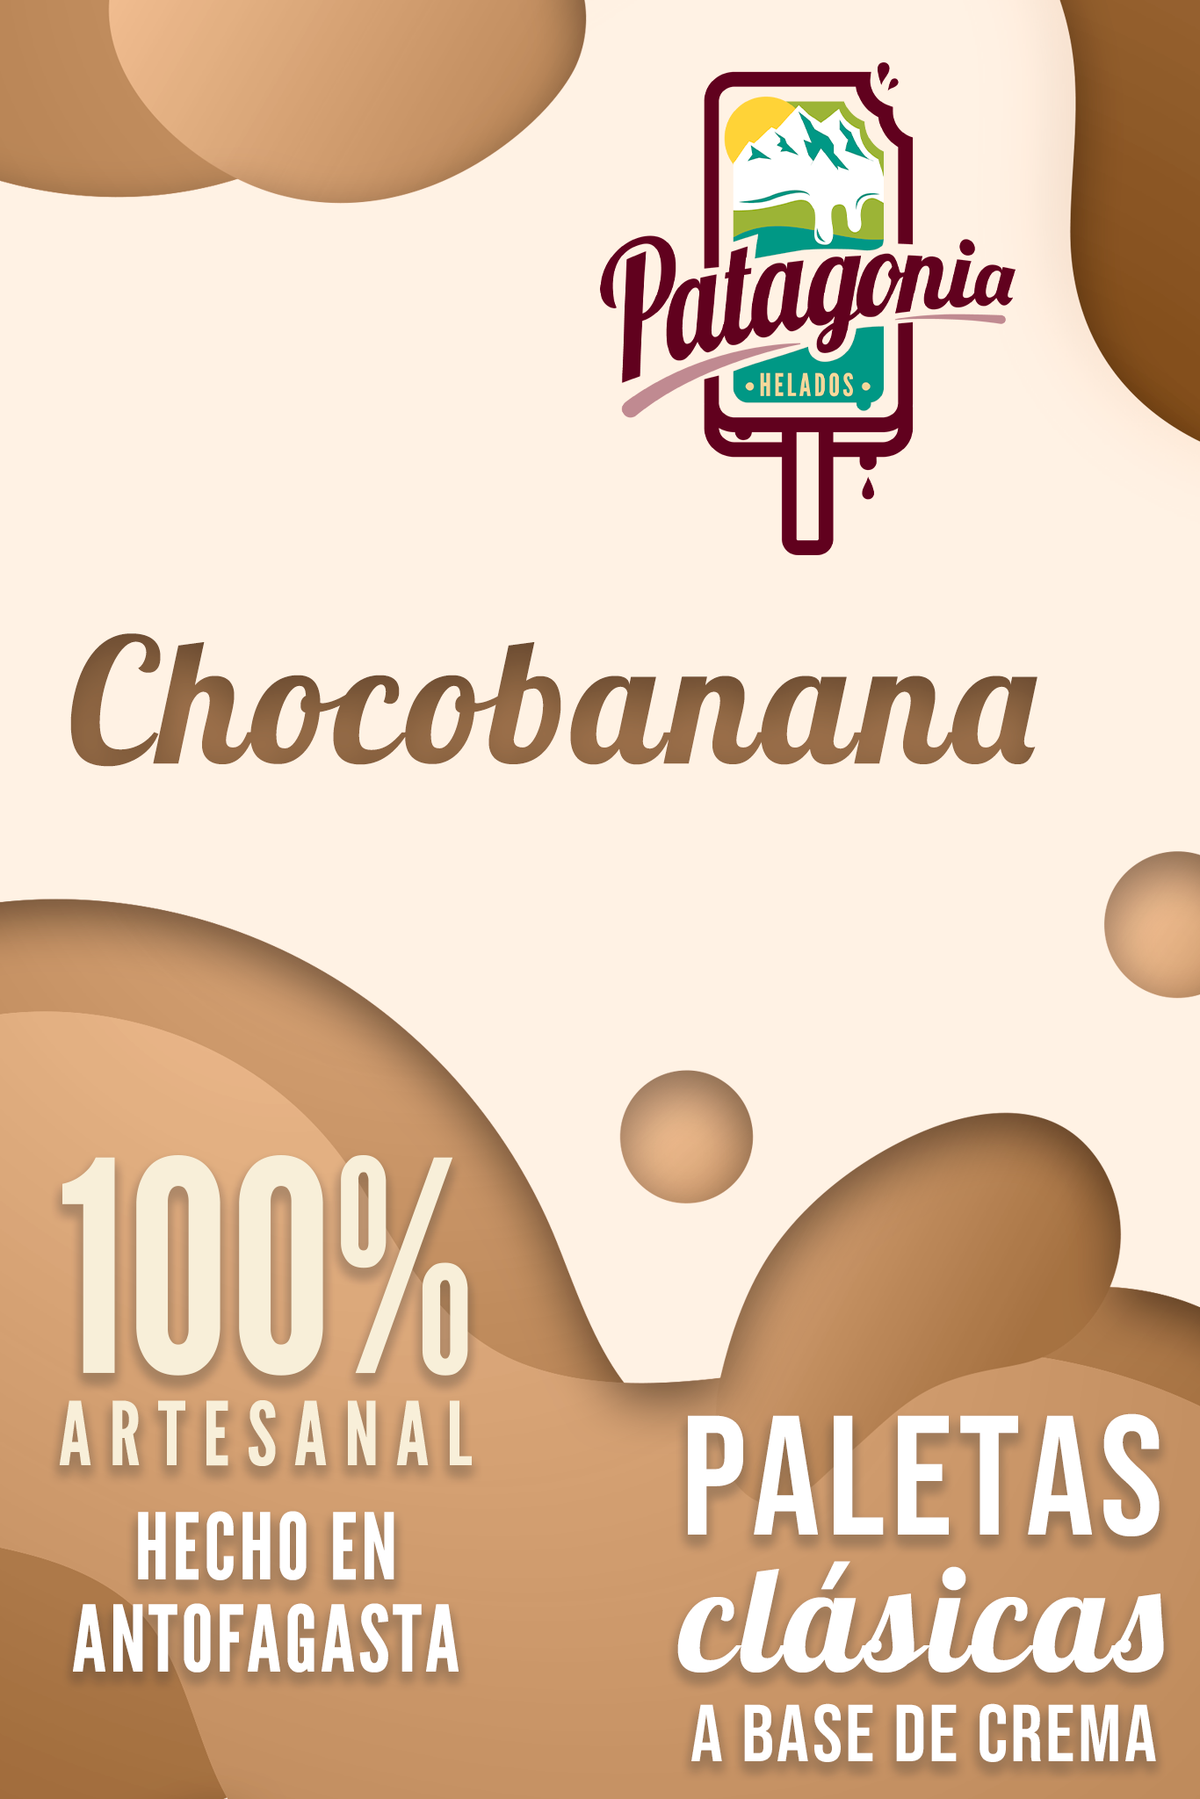 Paleta Chocobanana